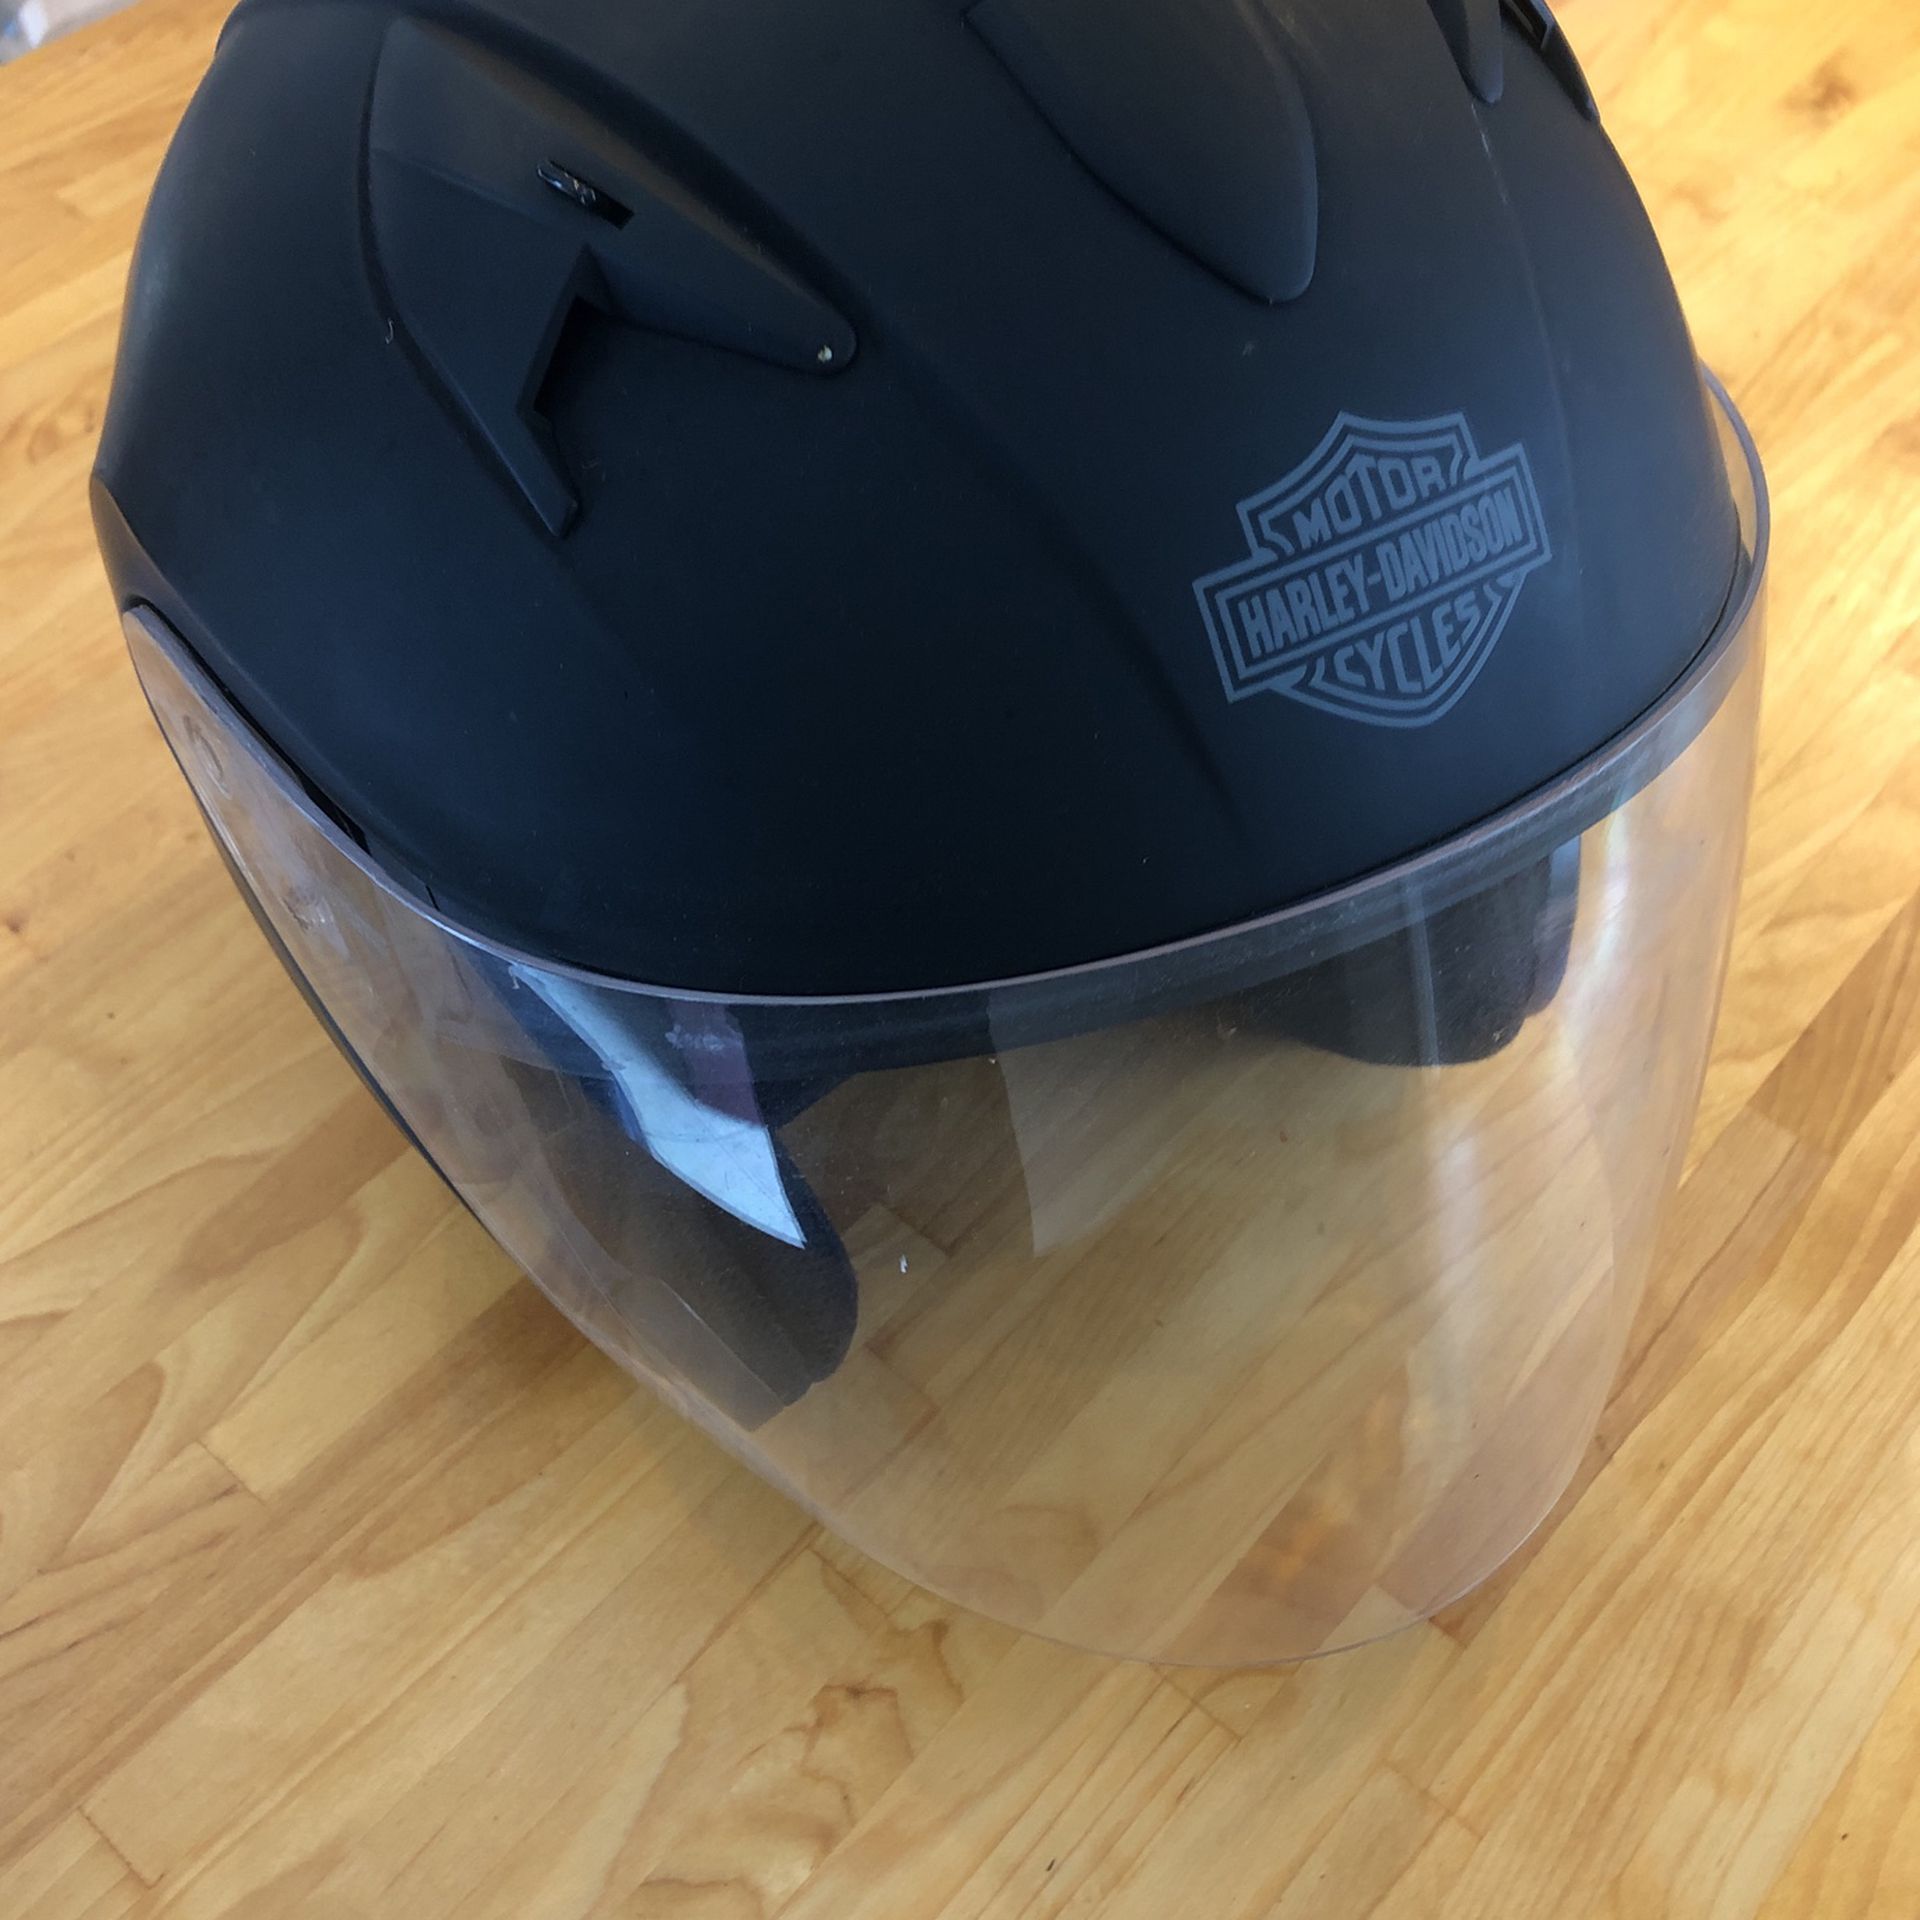 Hardly Davidson  Helmet With Sun Glass  Size Xxl